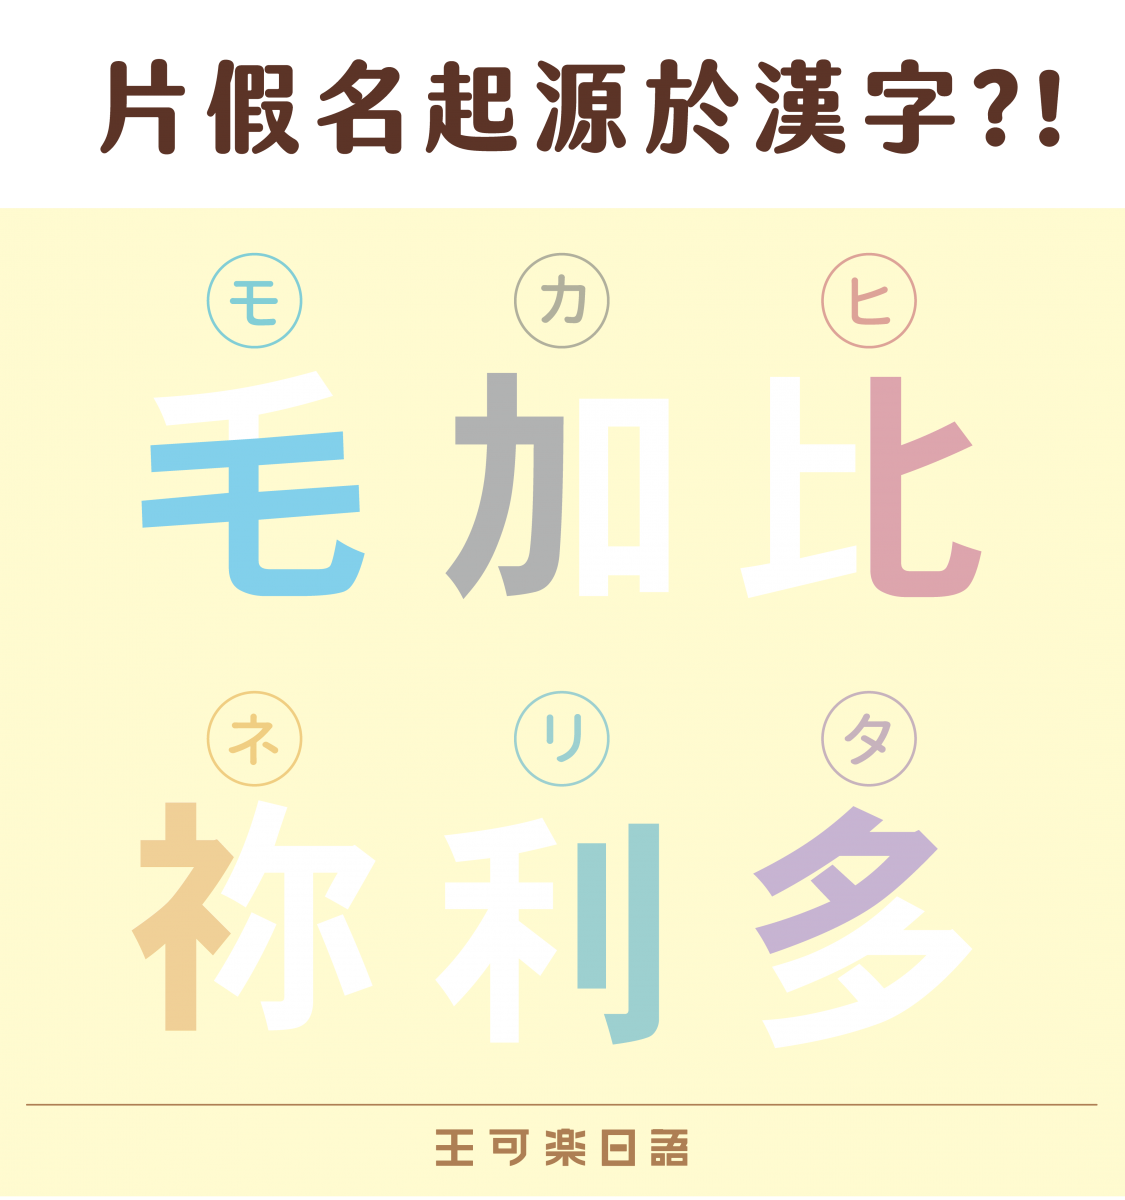 忘記你我做不到 最好學的王可樂日語50音入門書 從字源與情境完熟五十音 最新消息 王可樂日語